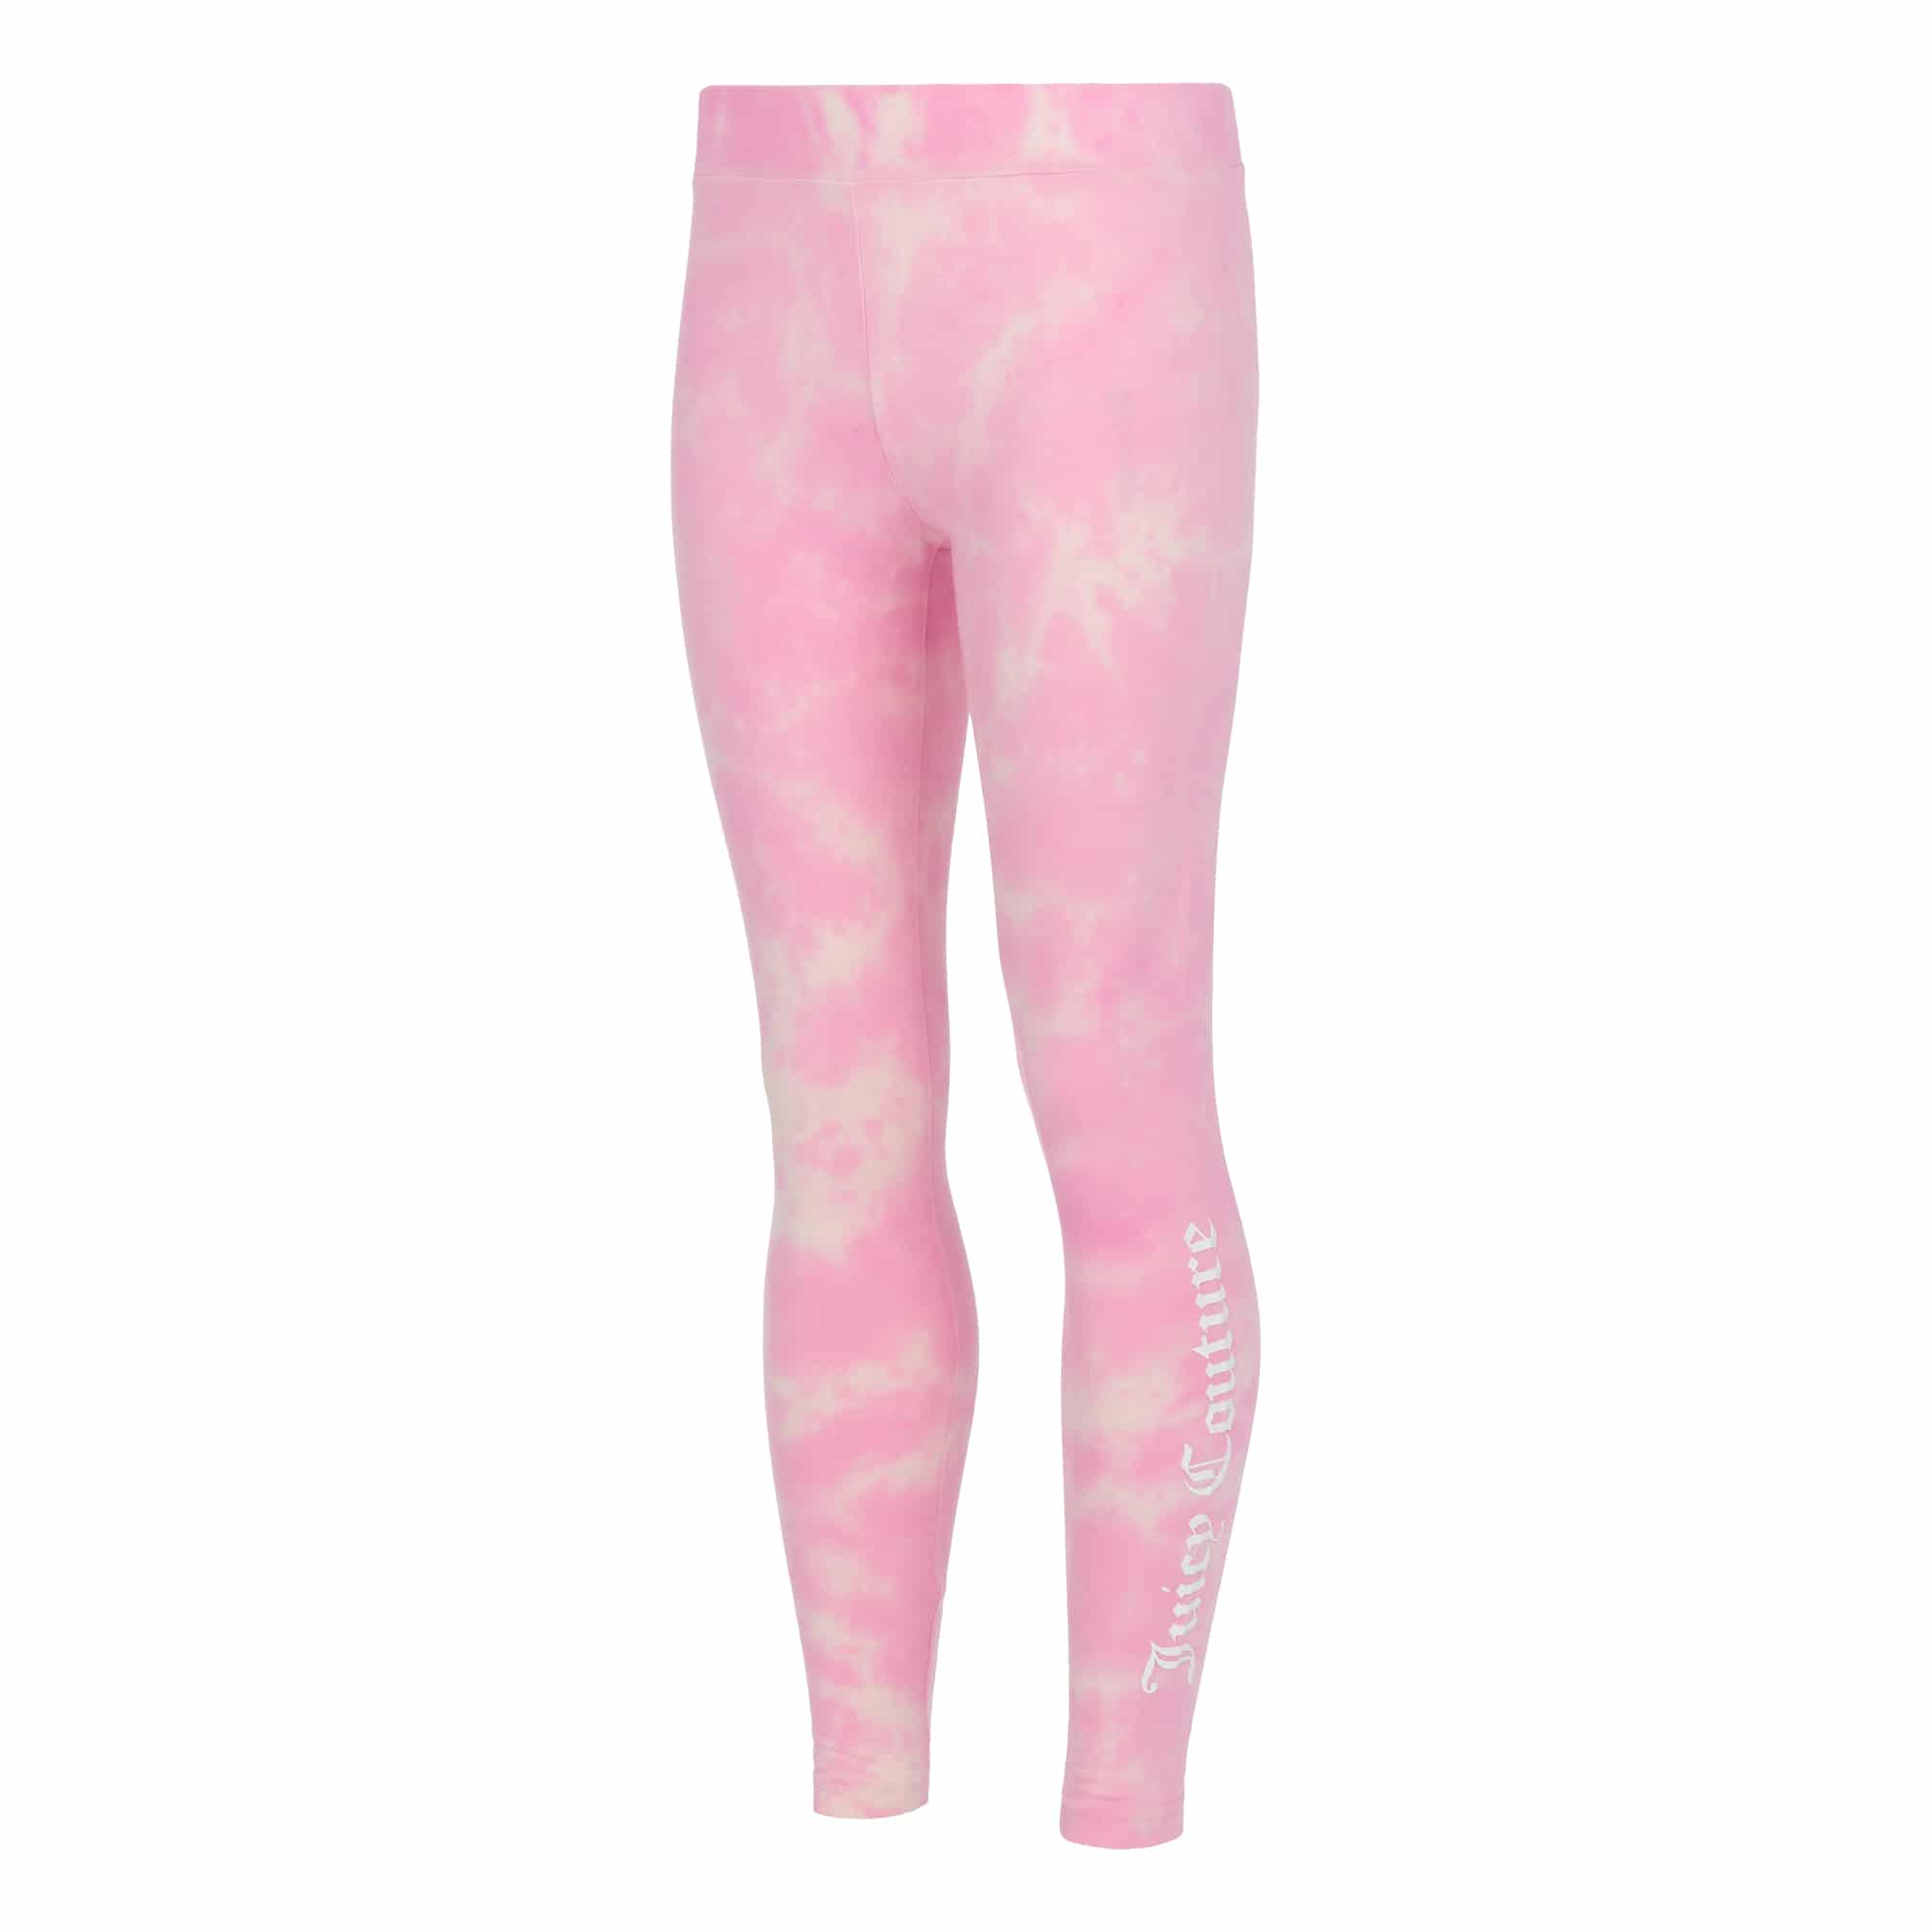 Juicy Couture girls pink tie dye leggings side view